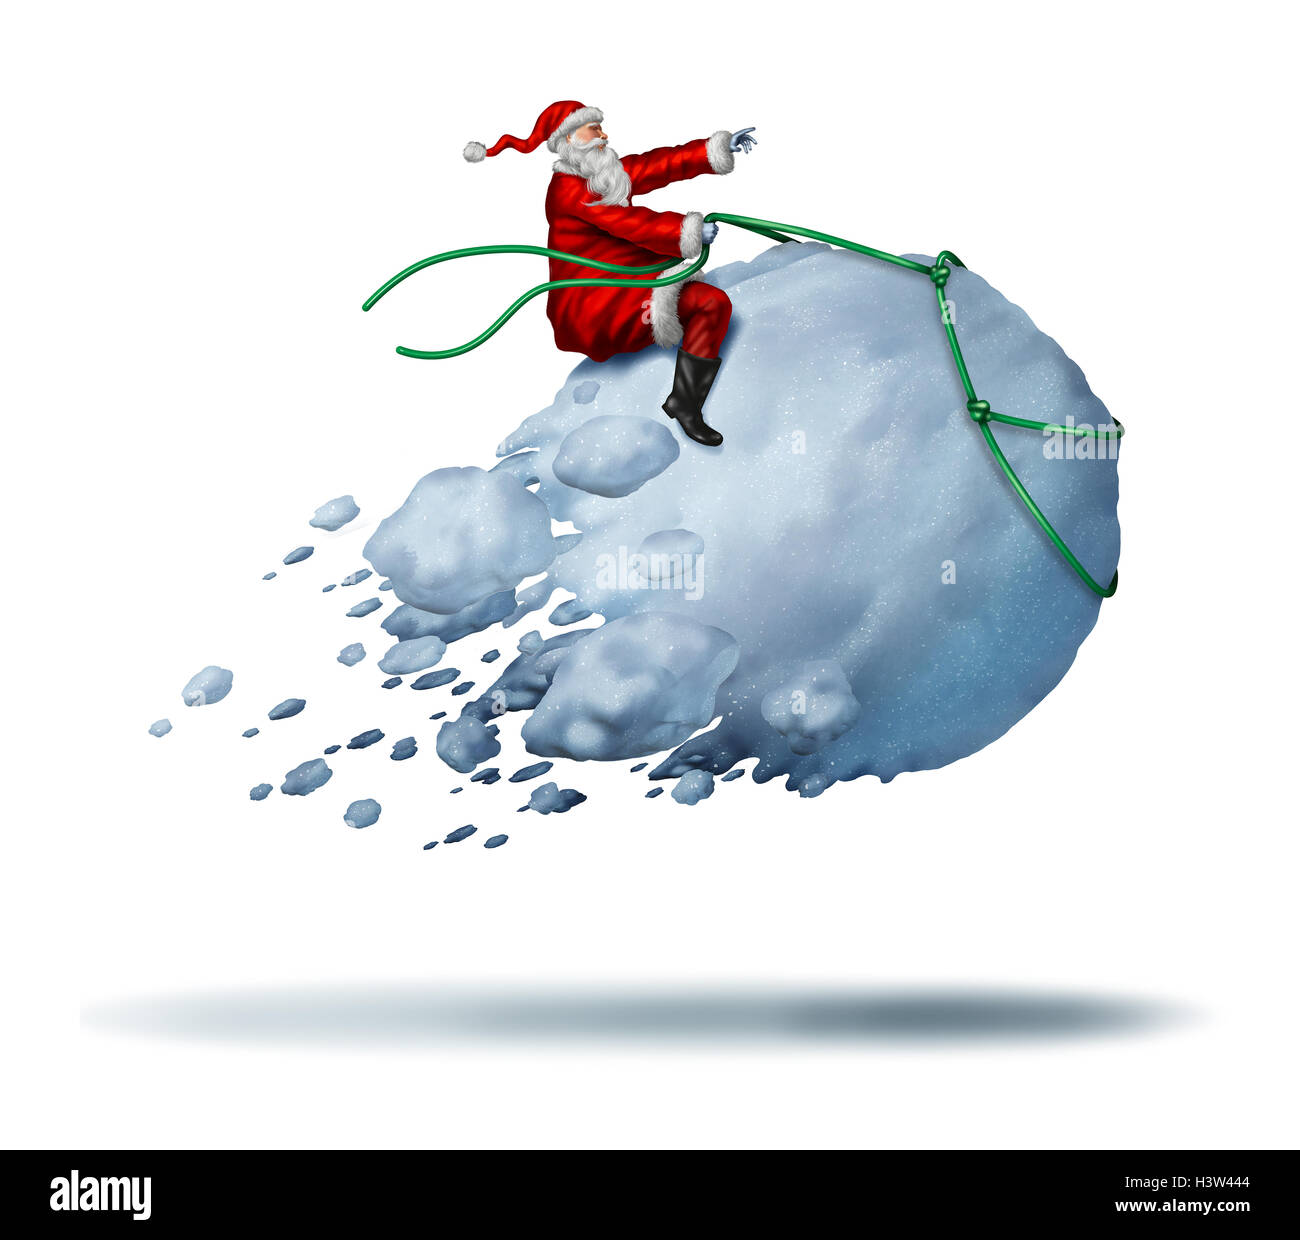 Santa Klausel Snow Fun als Weihnachtsmann Reiten einen fliegenden riesigen Schneeball als eine freudige glückliche Feier Winteraktivitäten mit 3D Abbildung Elemente auf einem weißen Hintergrund. Stockfoto